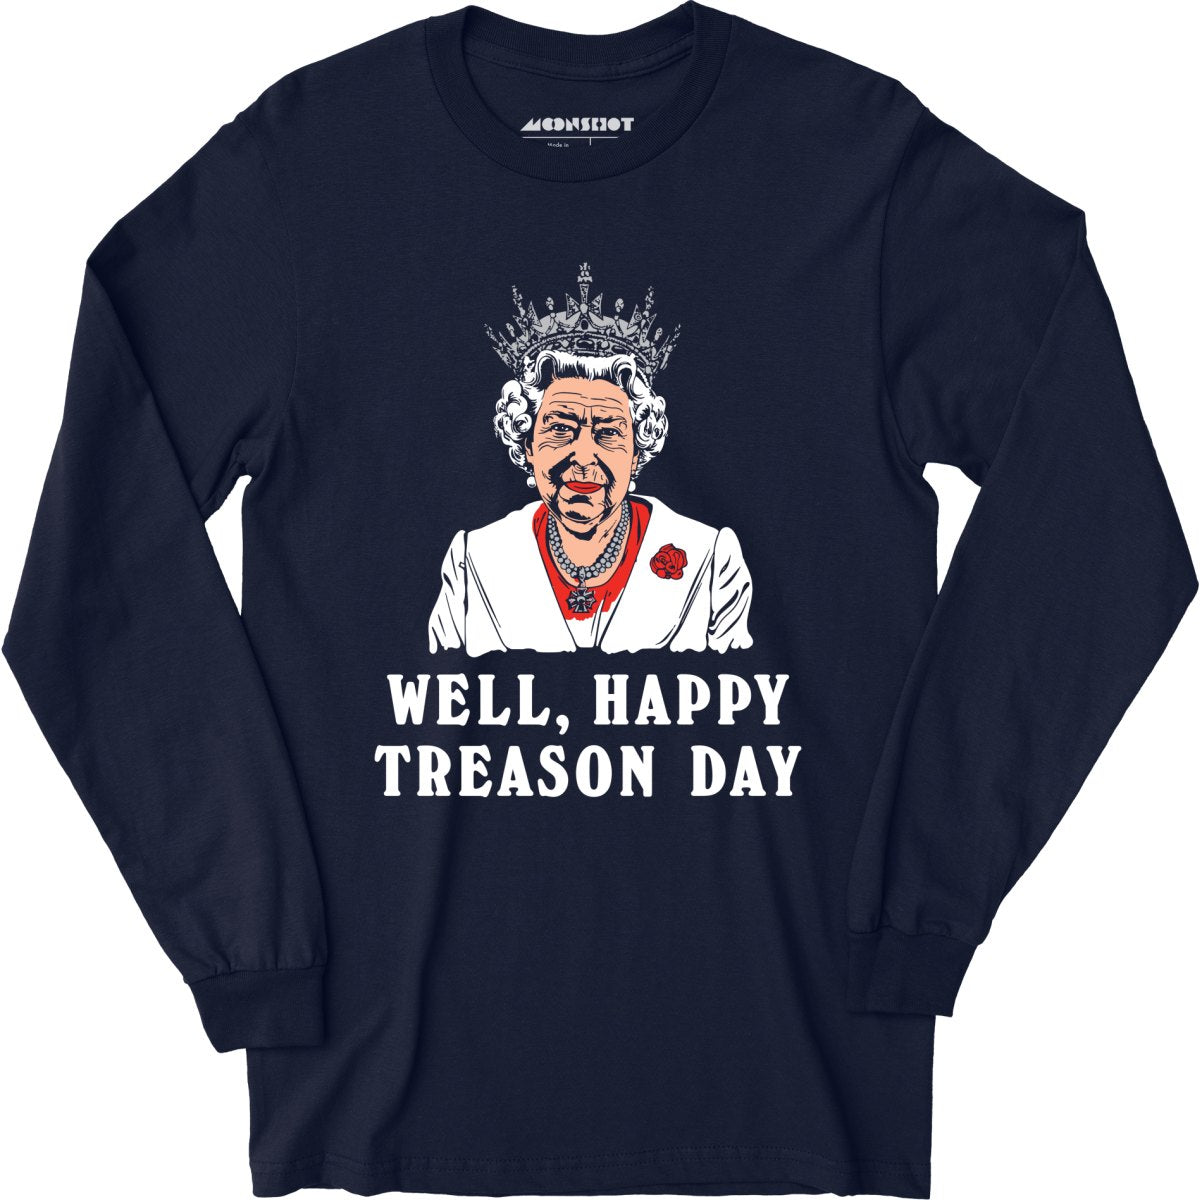 Well, Happy Treason Day - Long Sleeve T-Shirt